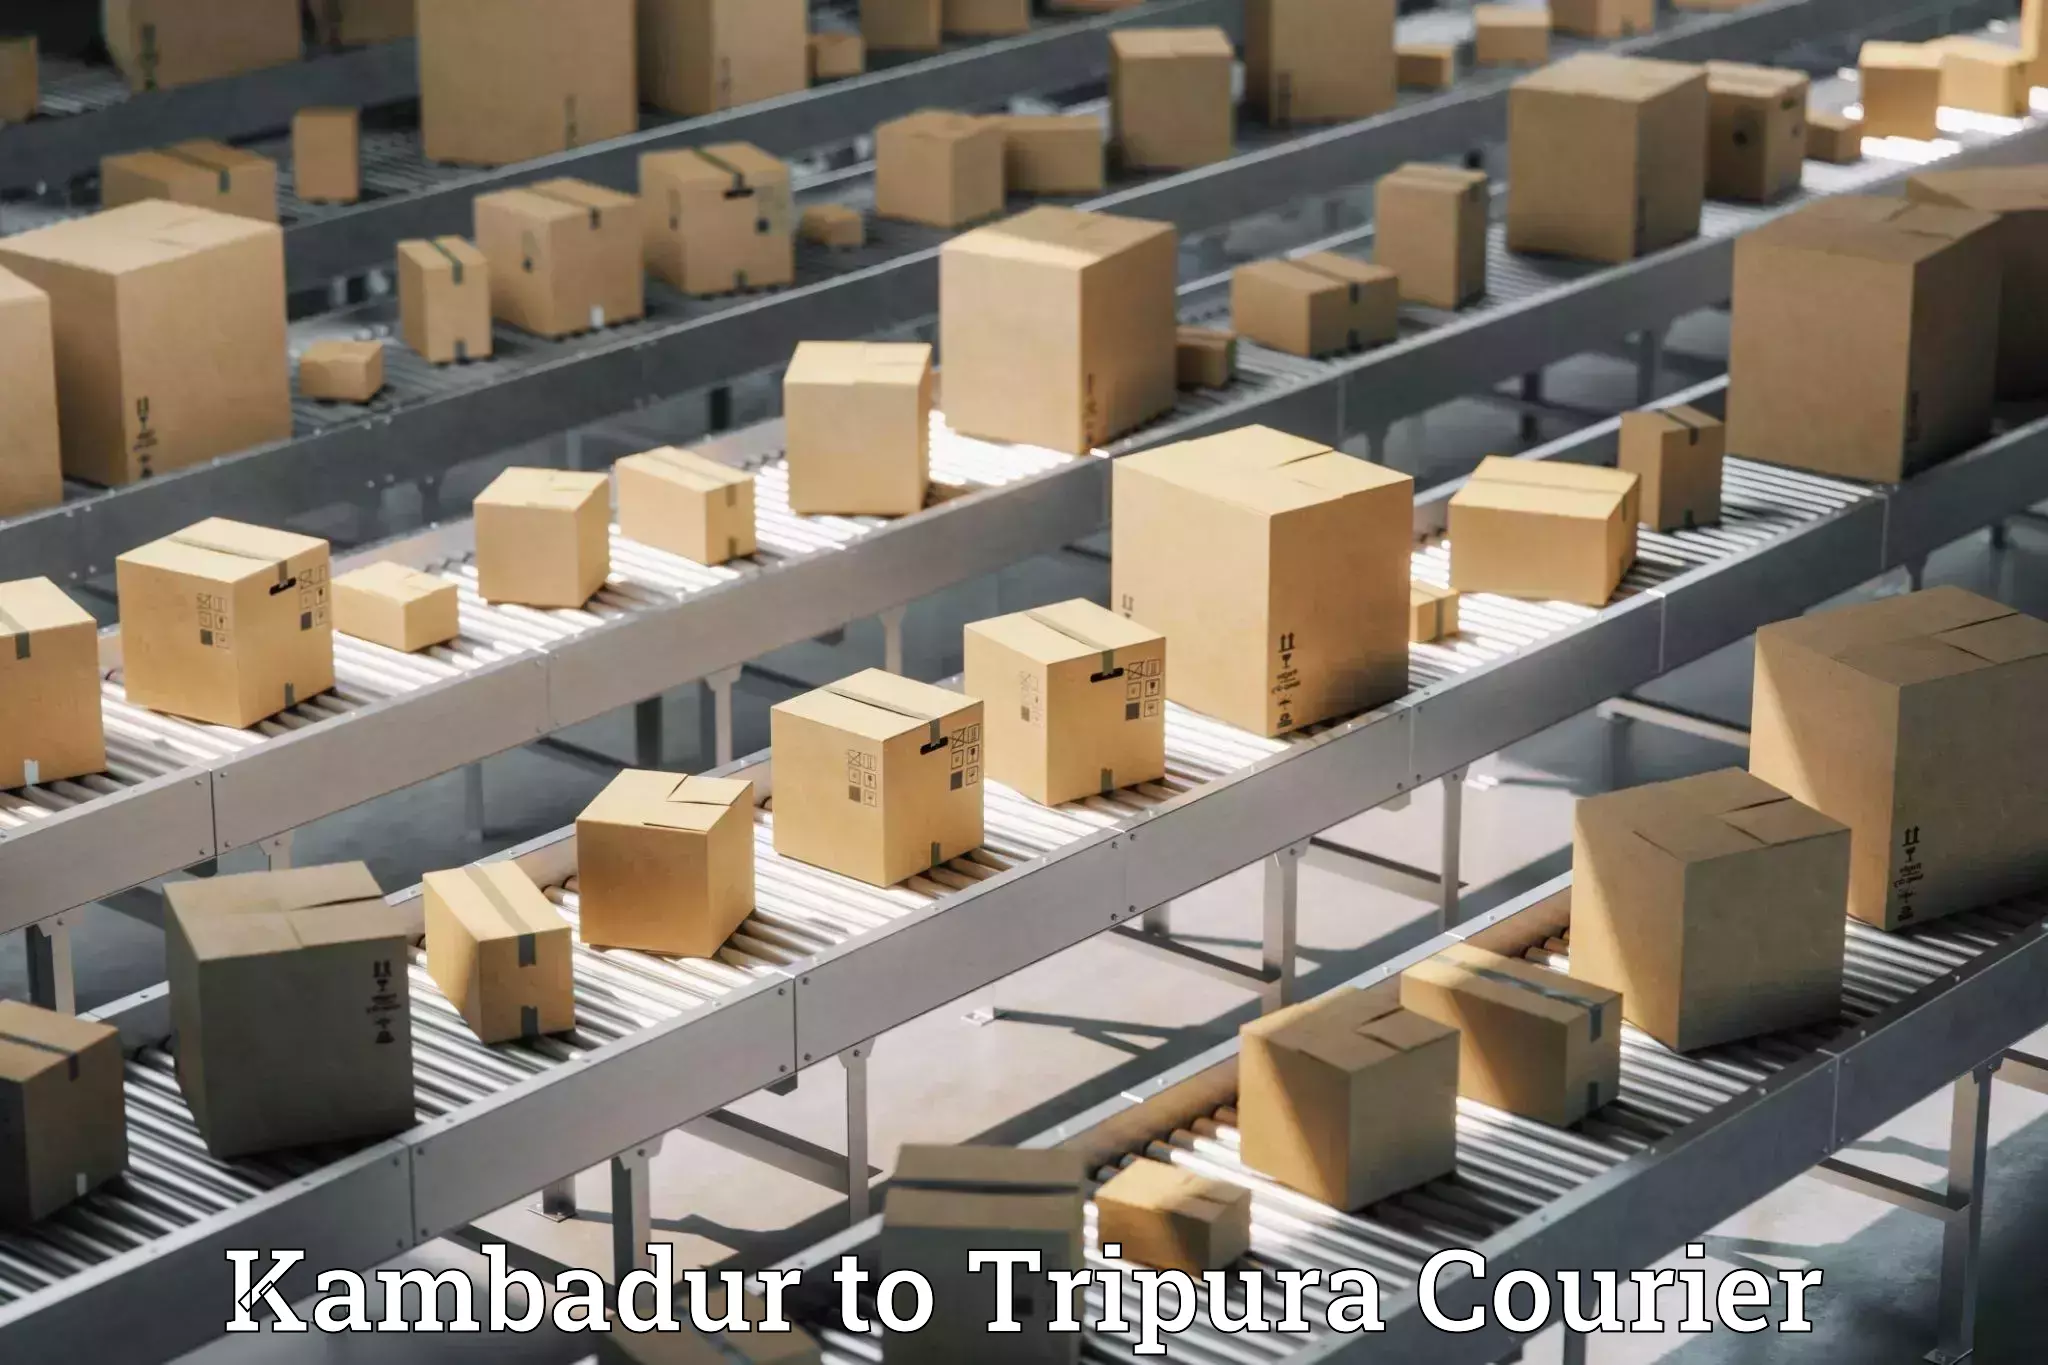 Next-day freight services Kambadur to Tripura